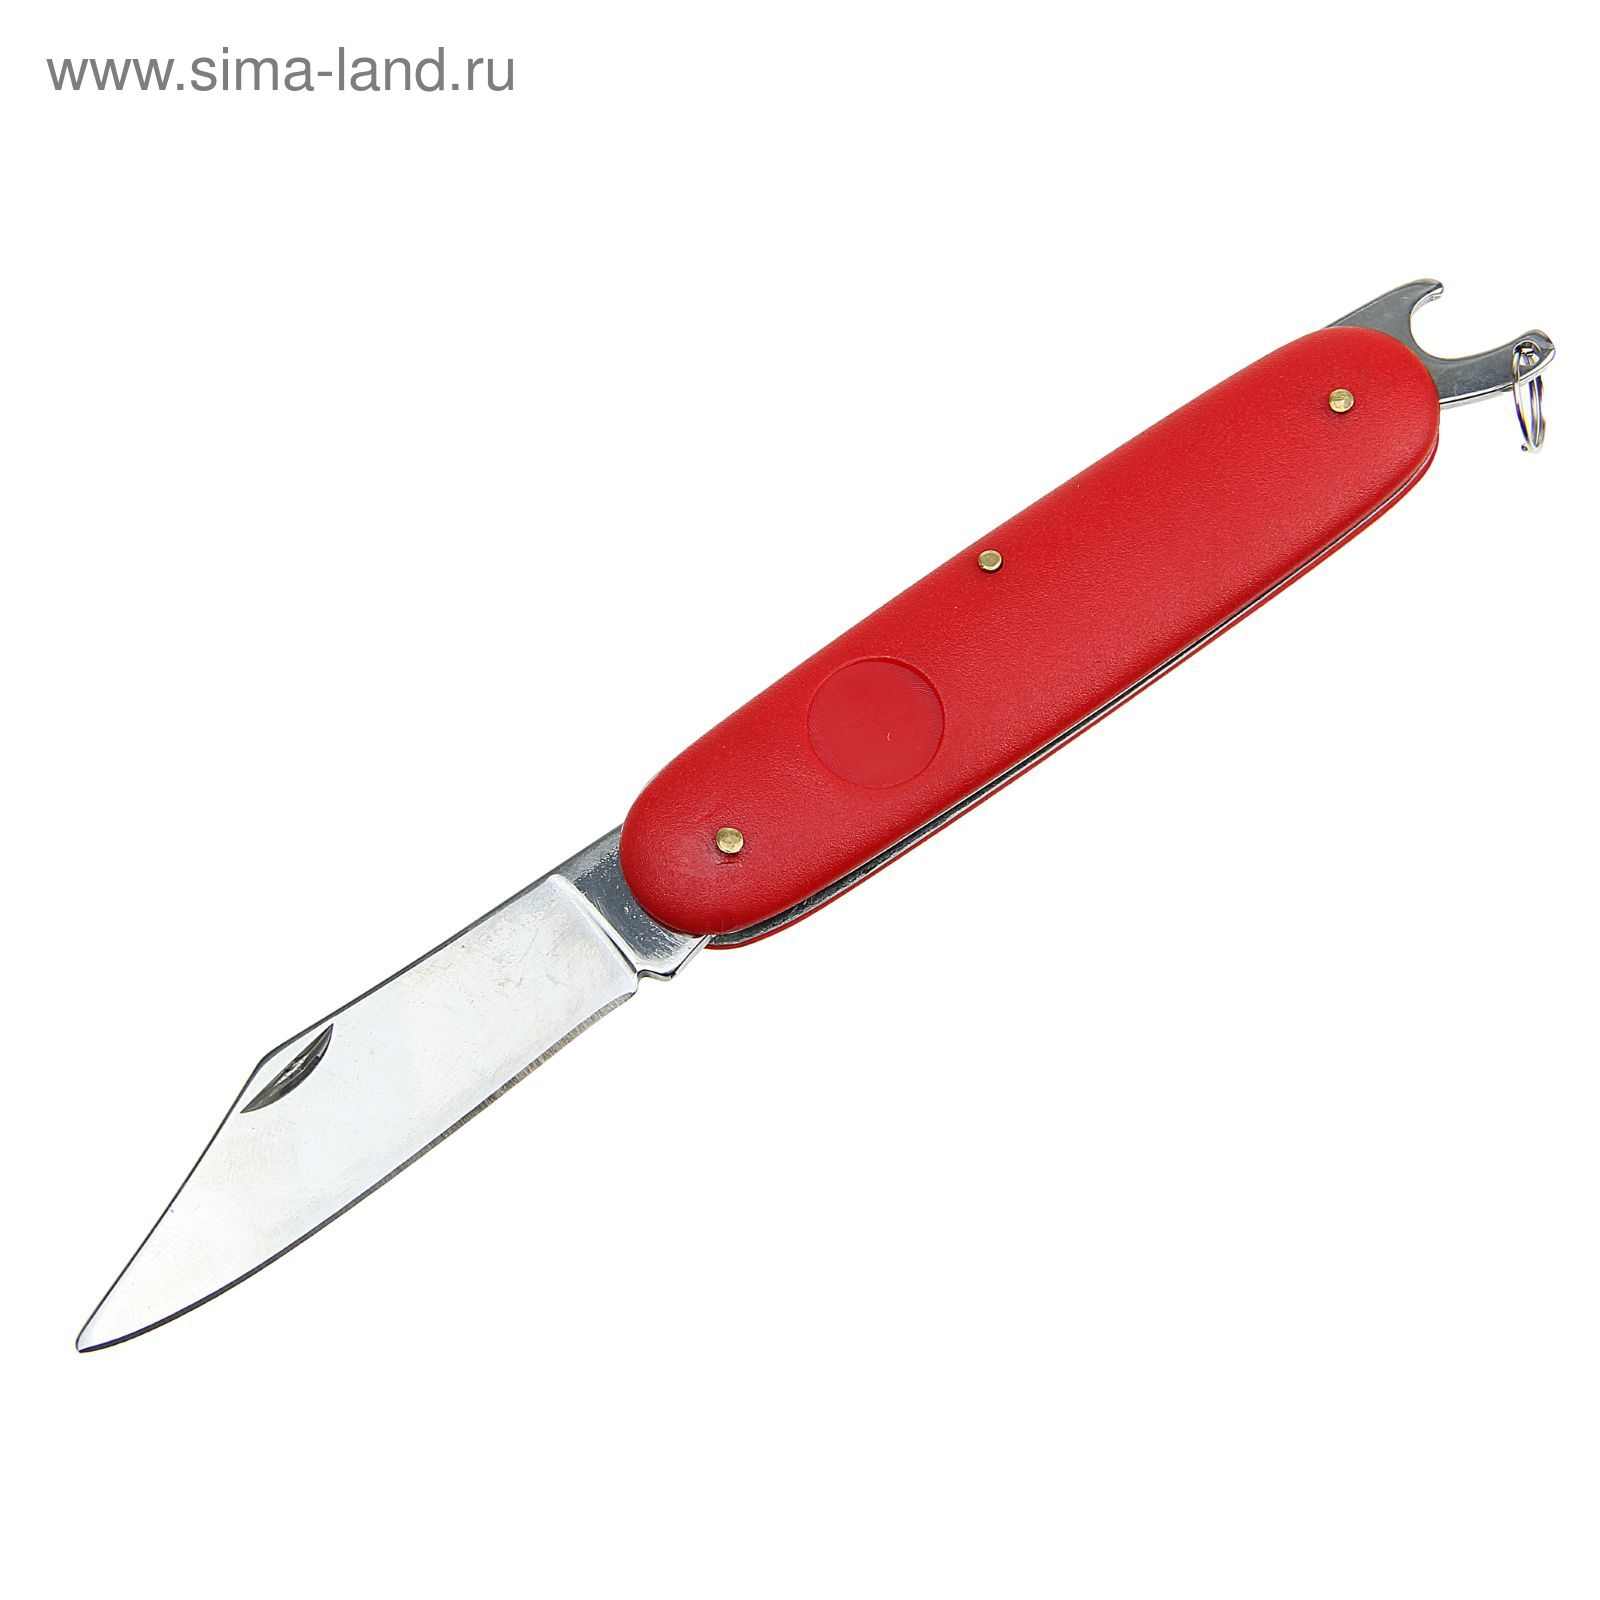 Нож универсальный 2в1 рукоять пластик, лезвие 6,5см, 16,5см